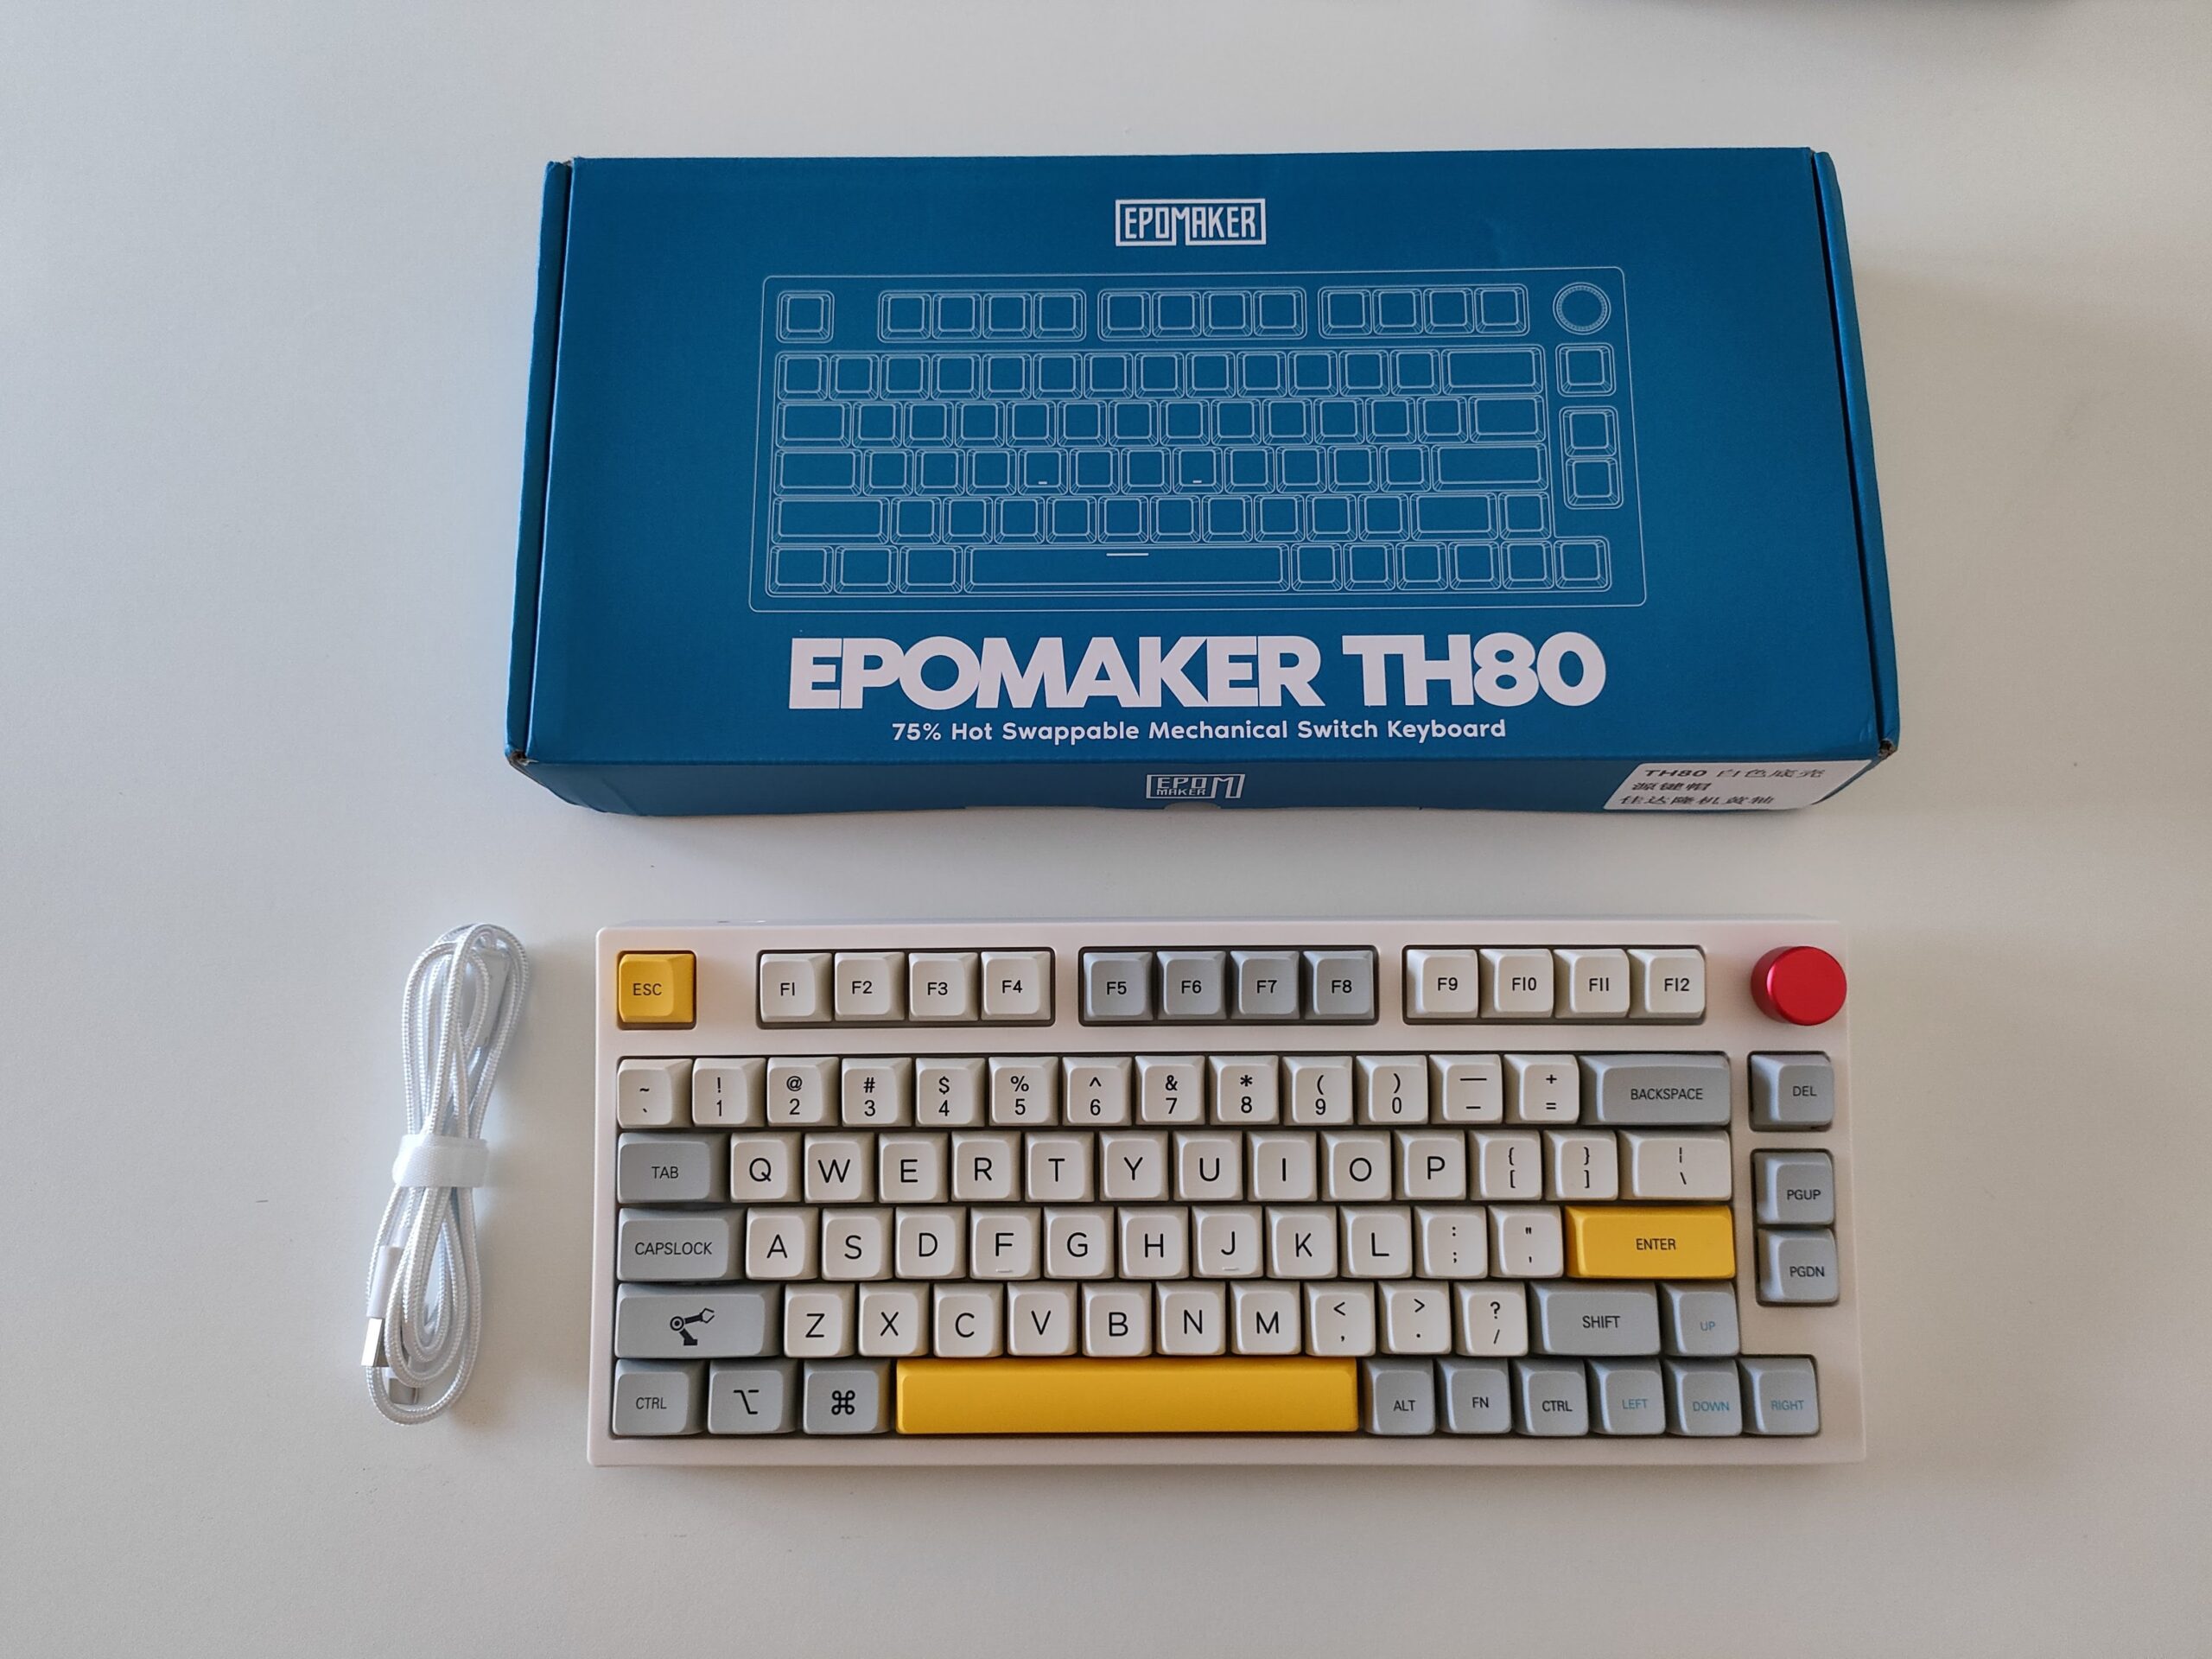 Recensione Epomaker TH80, la miglior tastiera meccanica economica?